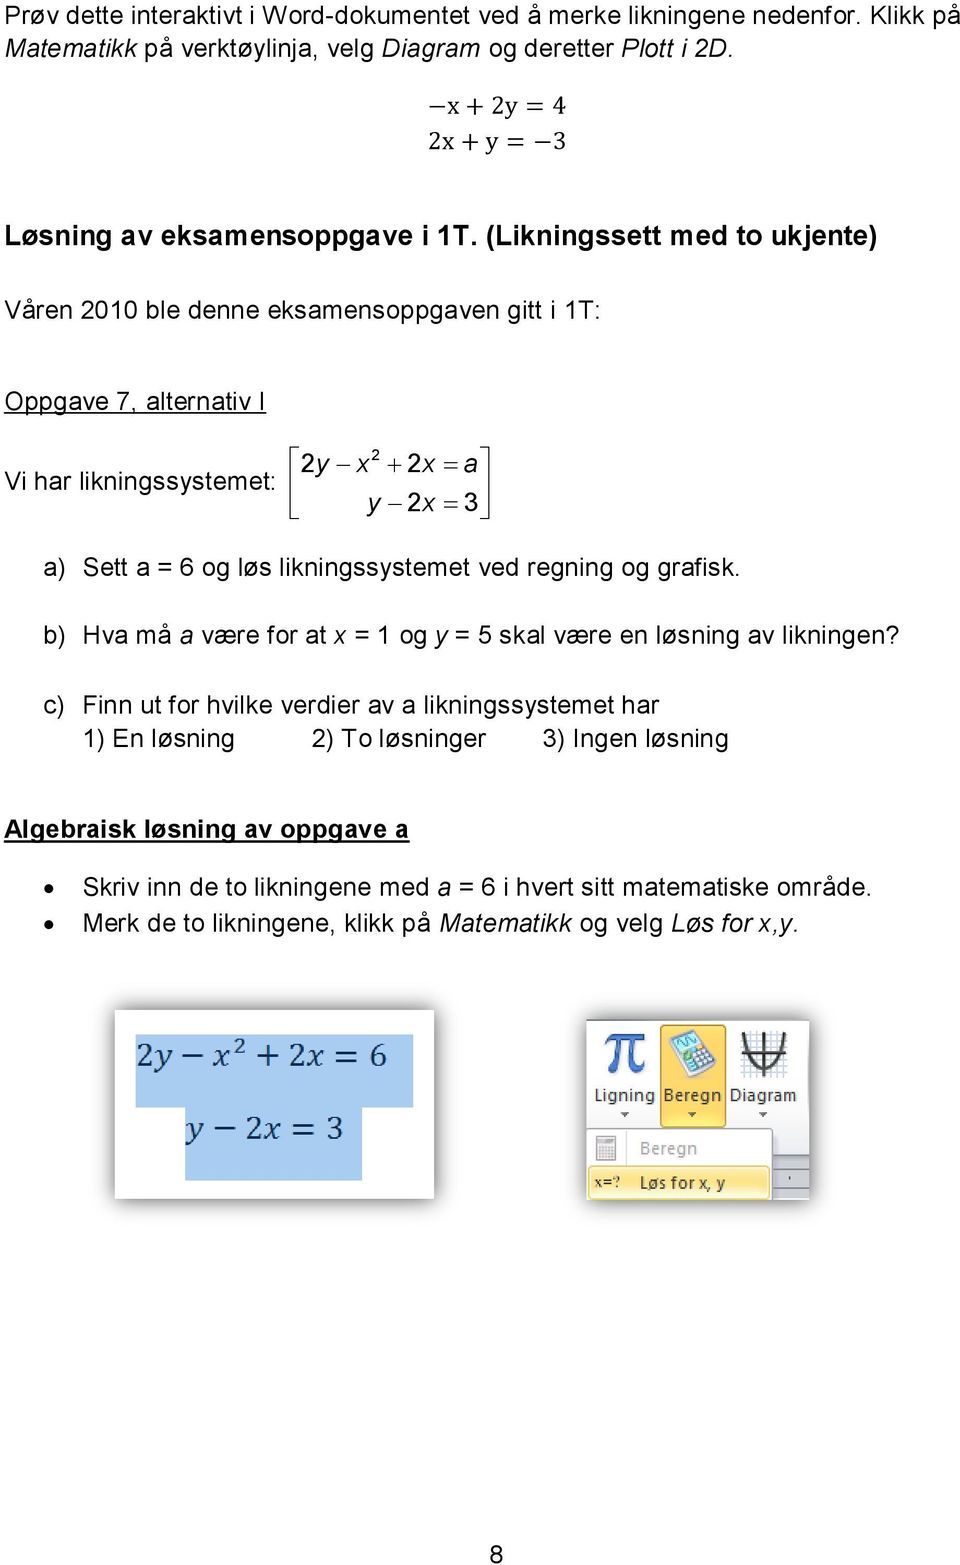 likningssystemet ved regning og grafisk. b) Hva må a være for at x = 1 og y = 5 skal være en løsning av likningen?